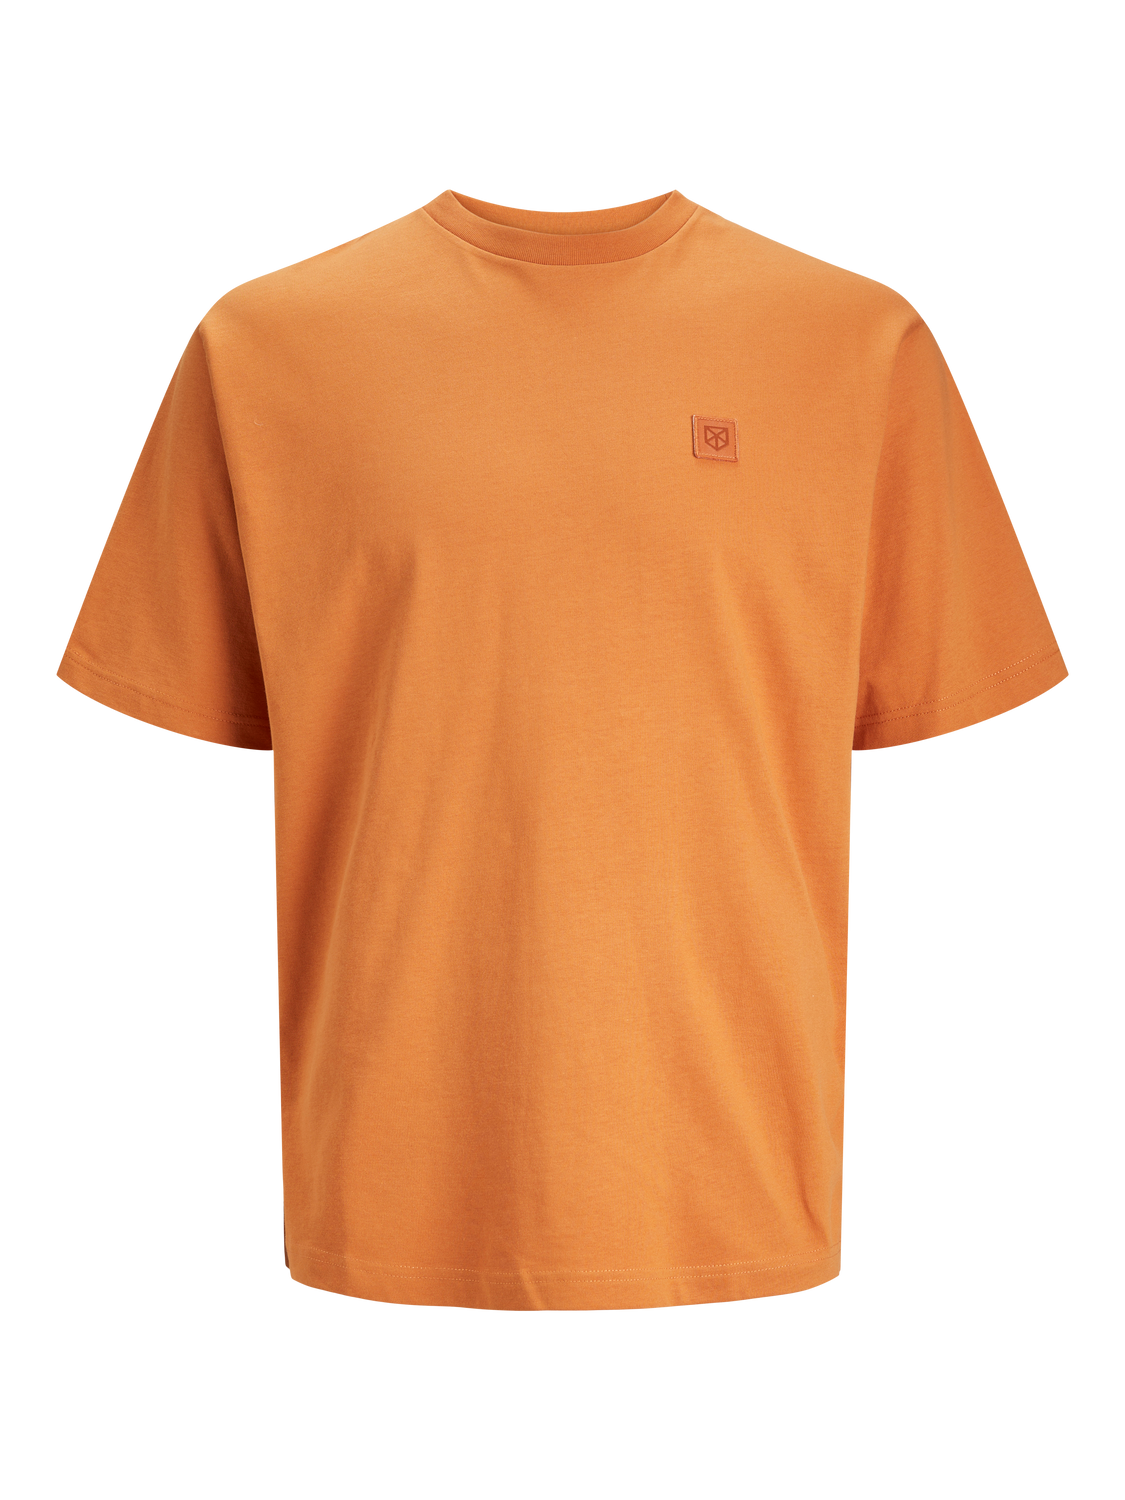 Camiseta básica manga corta naranja - JPRCC